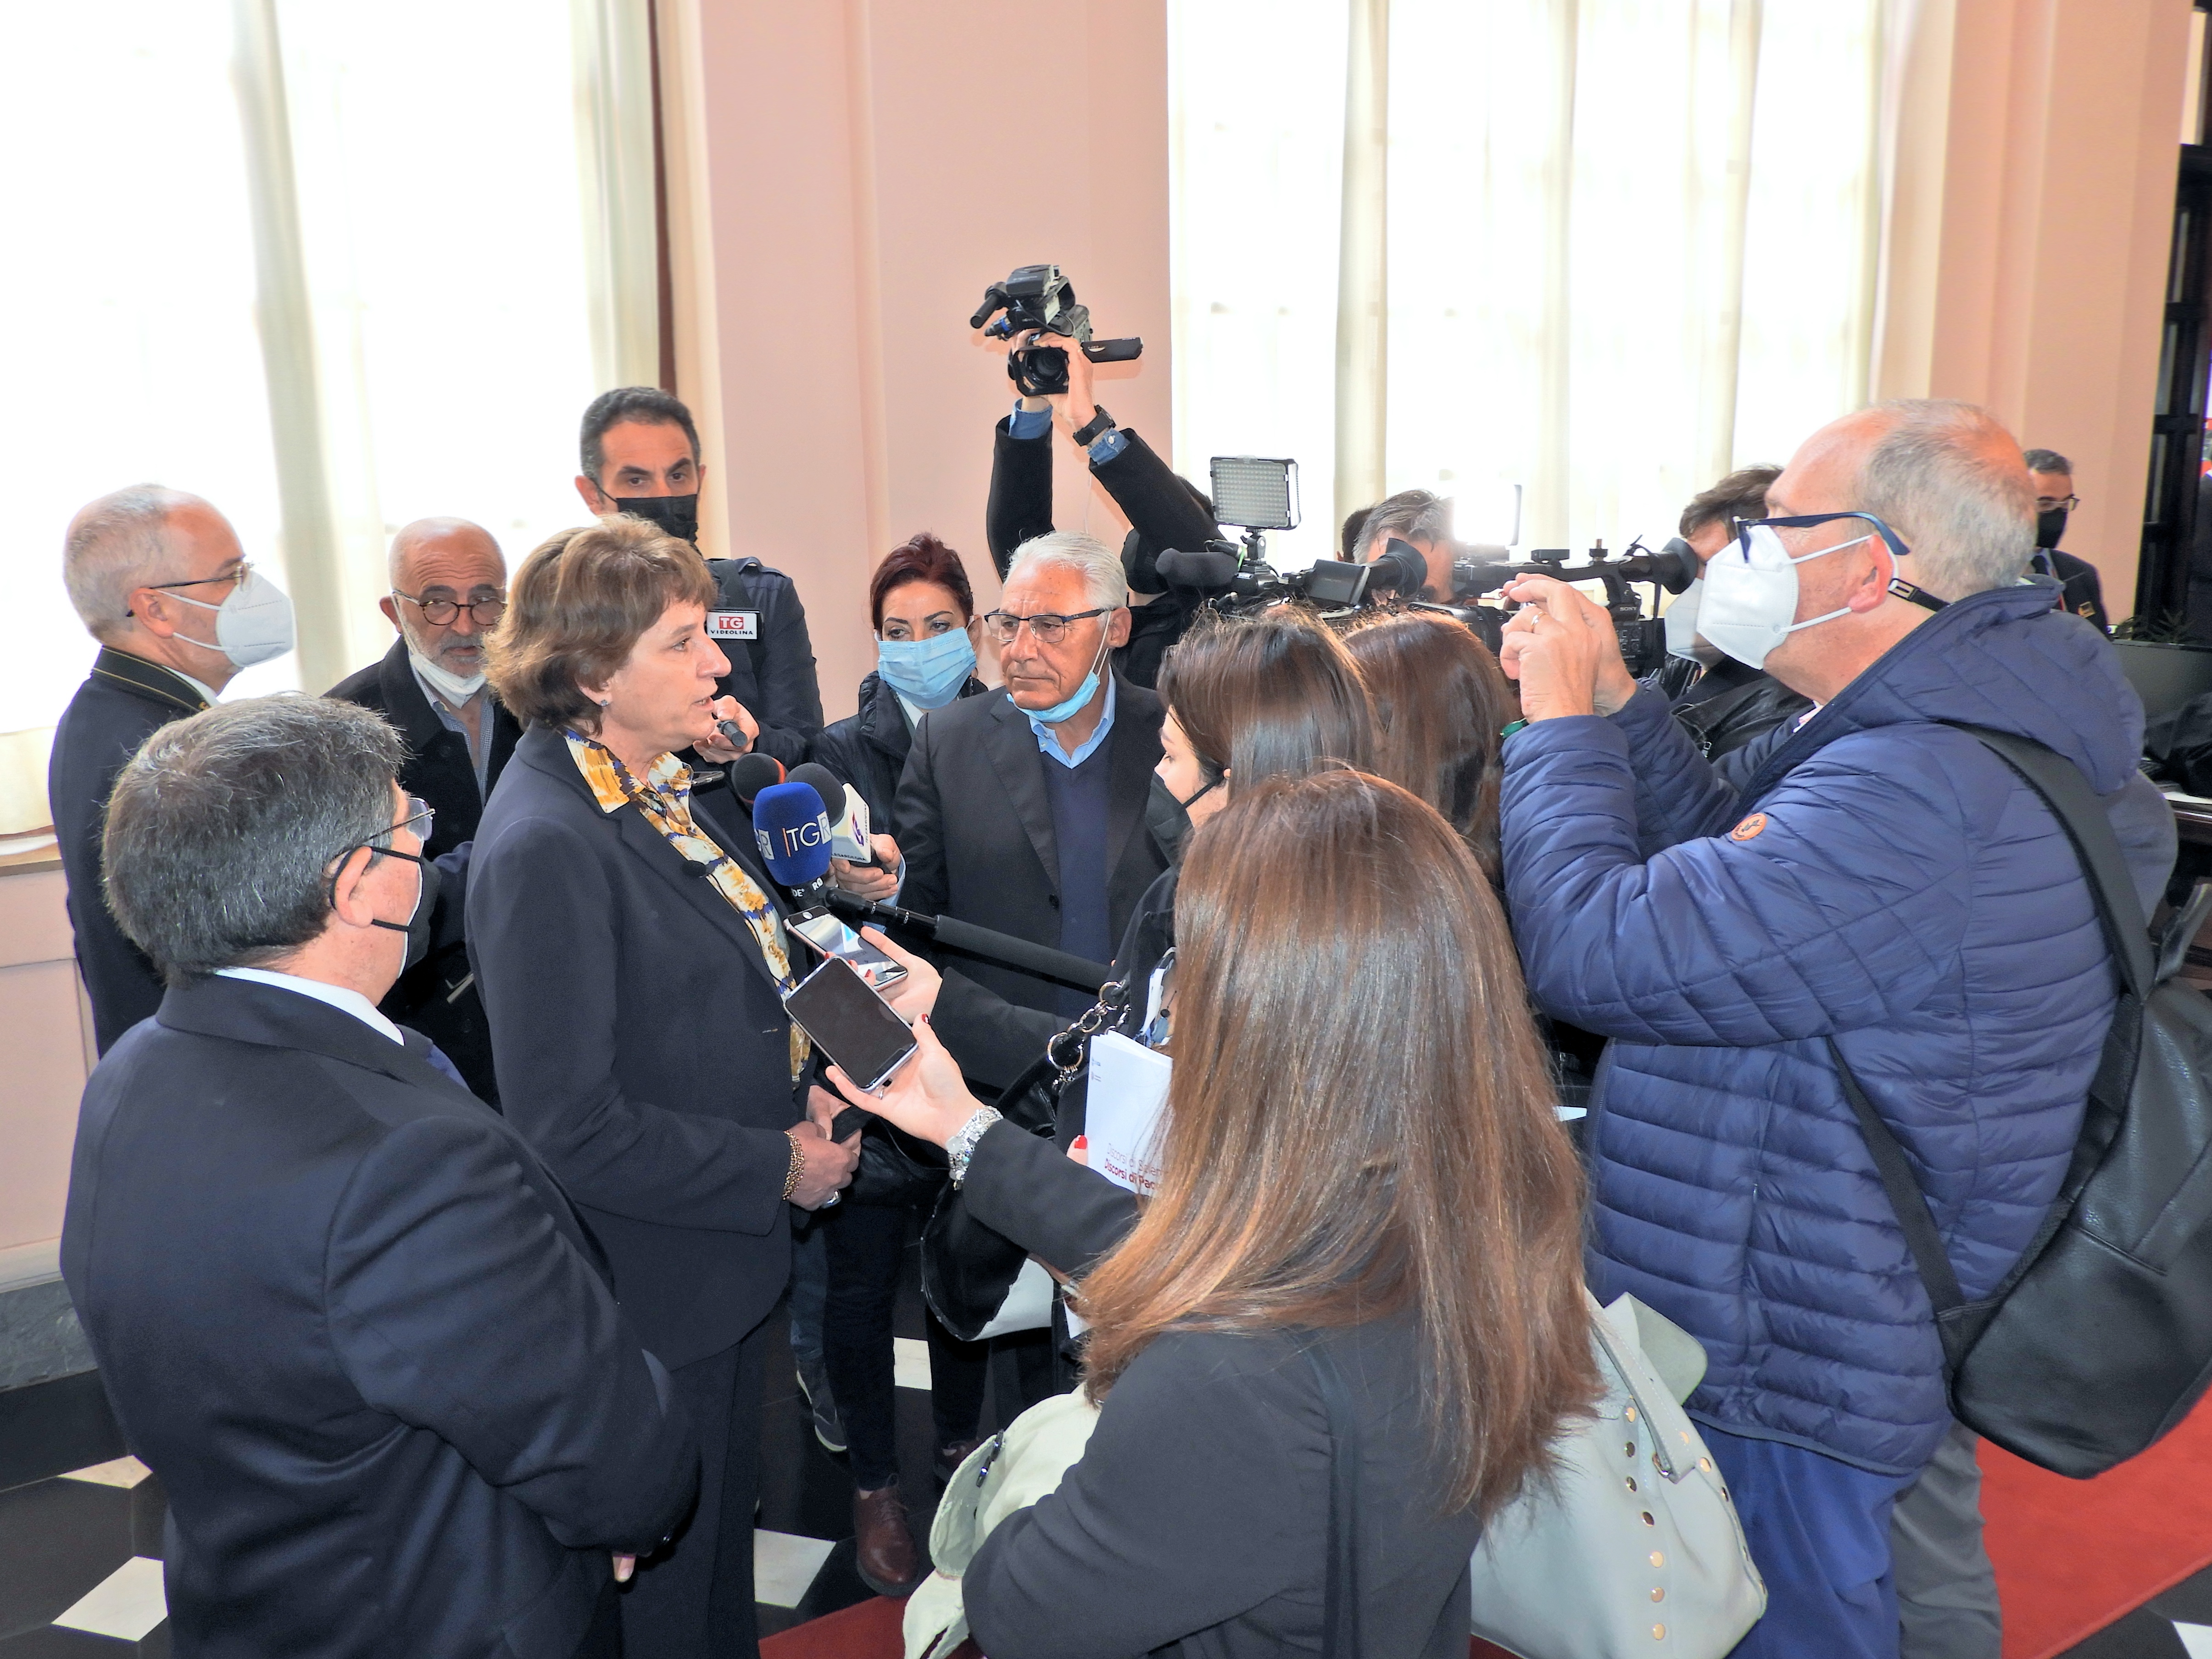 Le interviste al Ministro Maria Cristina Messa prima della cerimonia